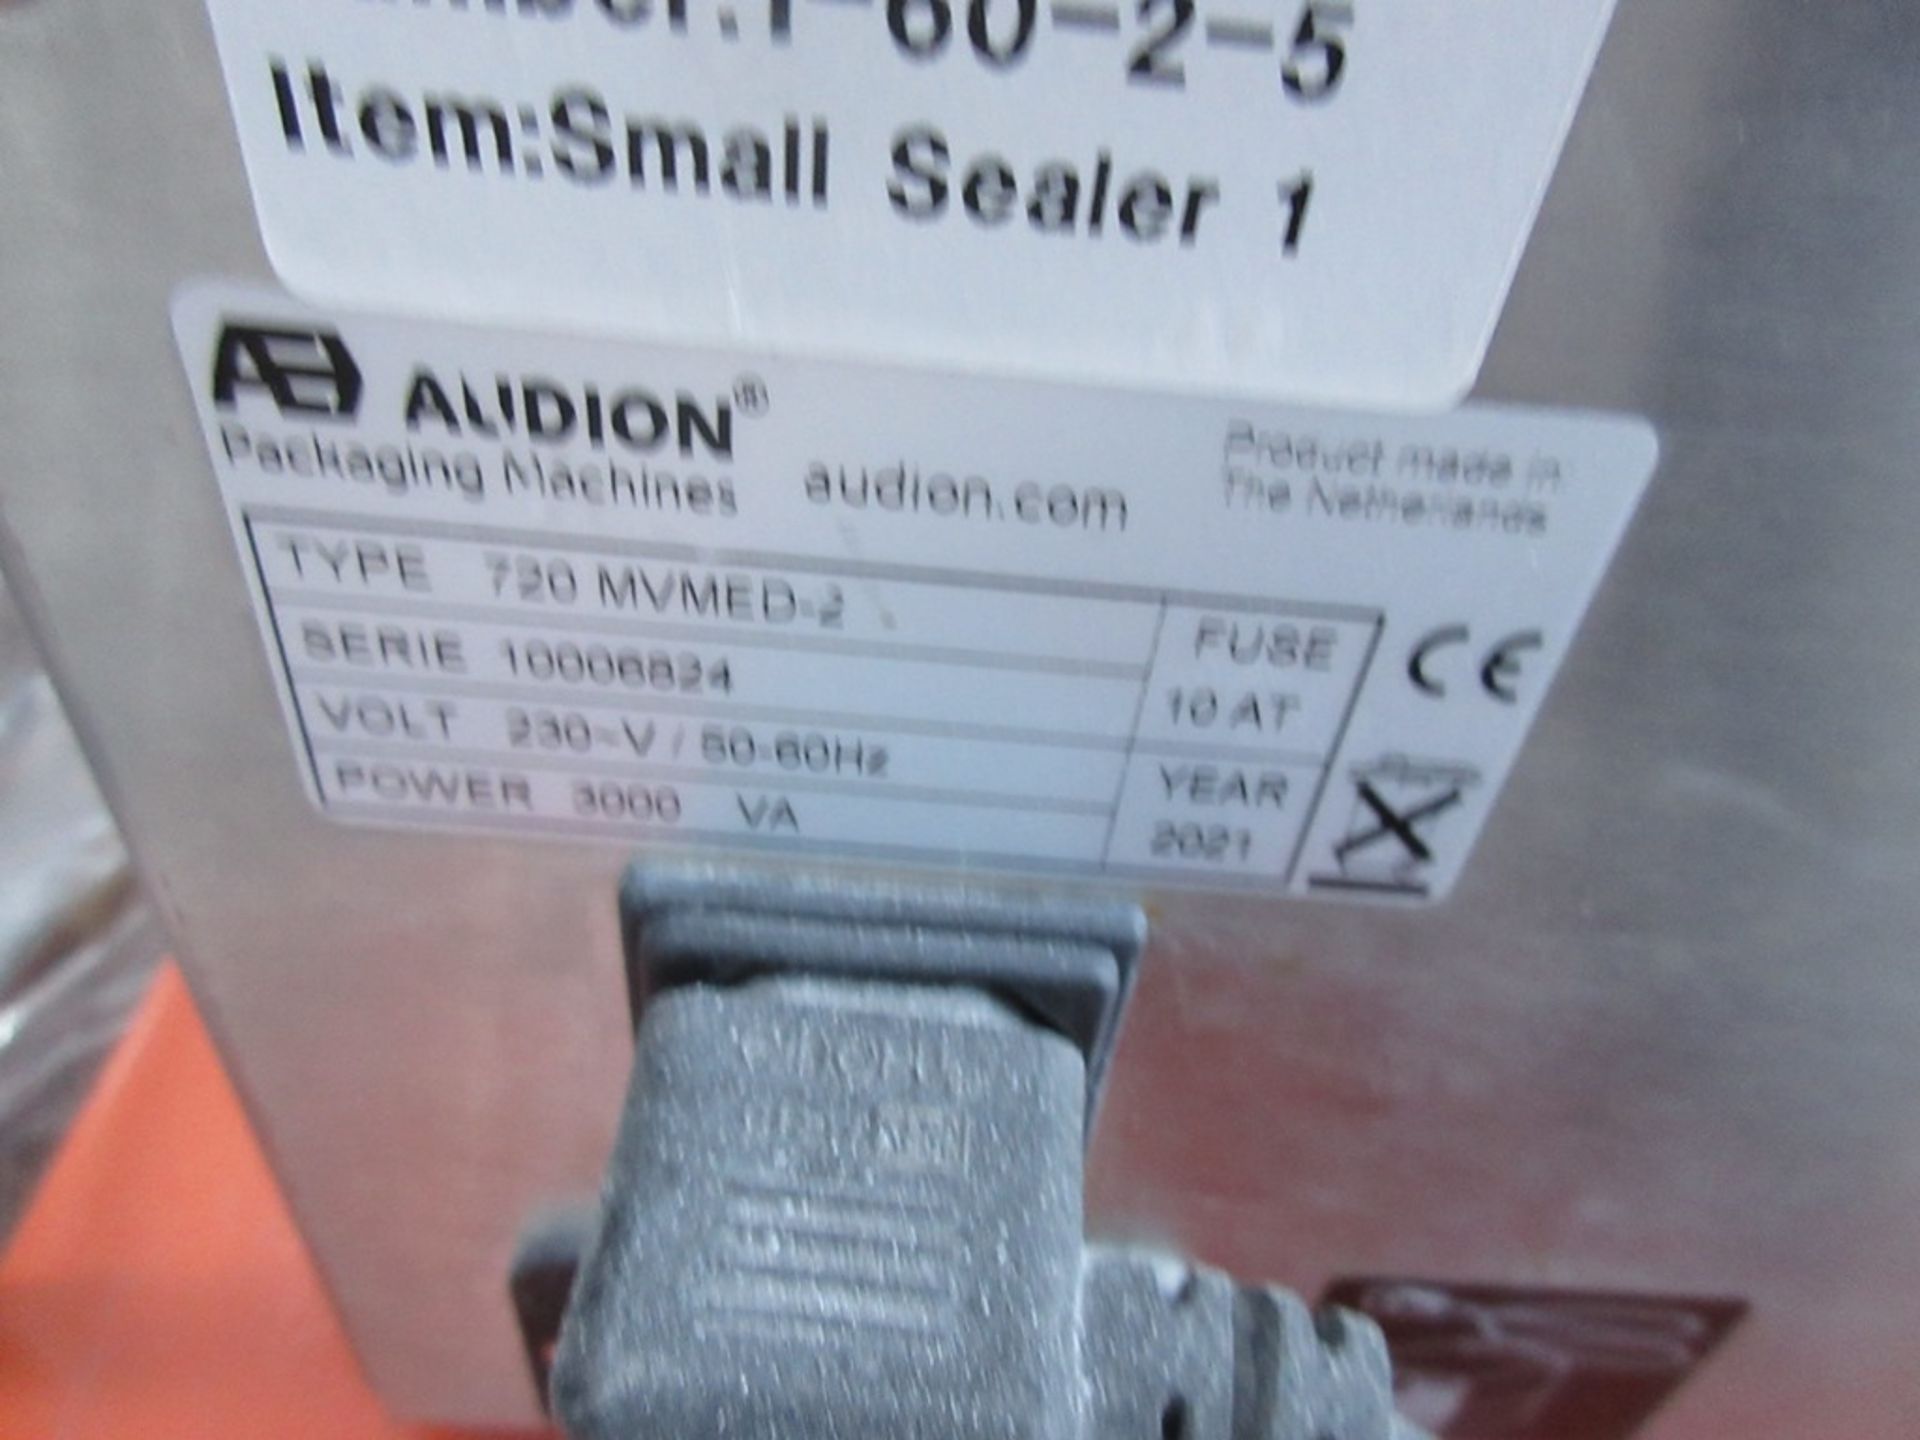 Audion 720 MVMED-2 heat sealer, 720mm width, serial no. 10006824 (2021) - Image 4 of 5